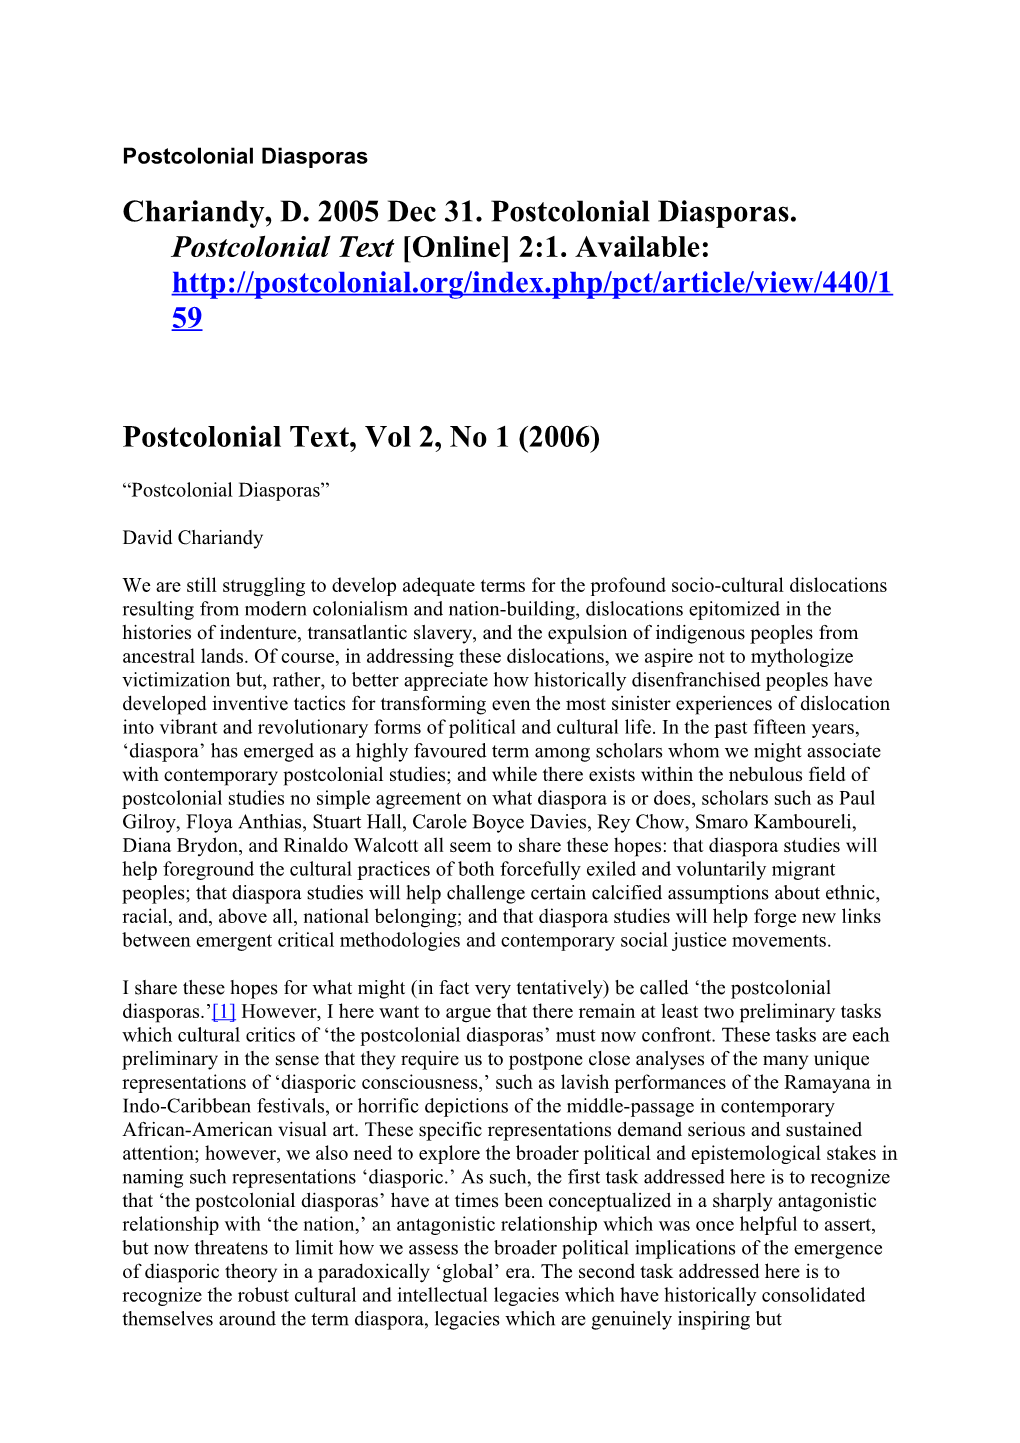 Postcolonial Text, Vol 2, No 1 (2006)